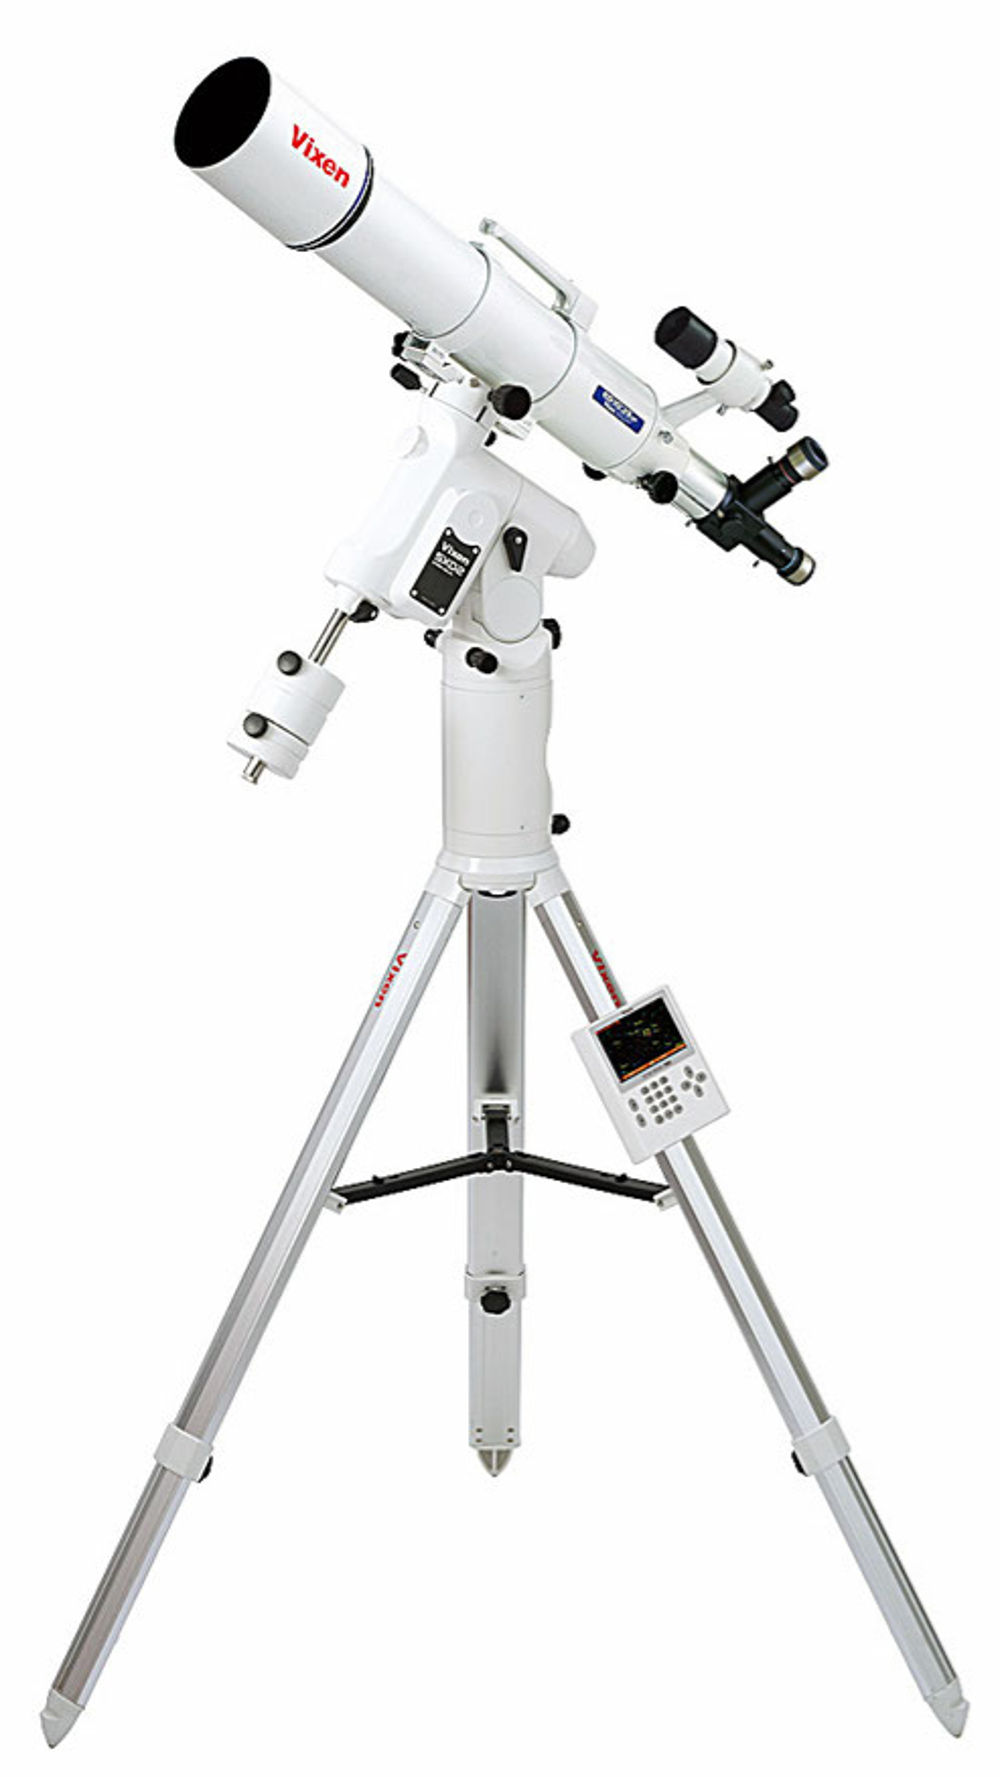 SXD2-SD103S complete telescope set